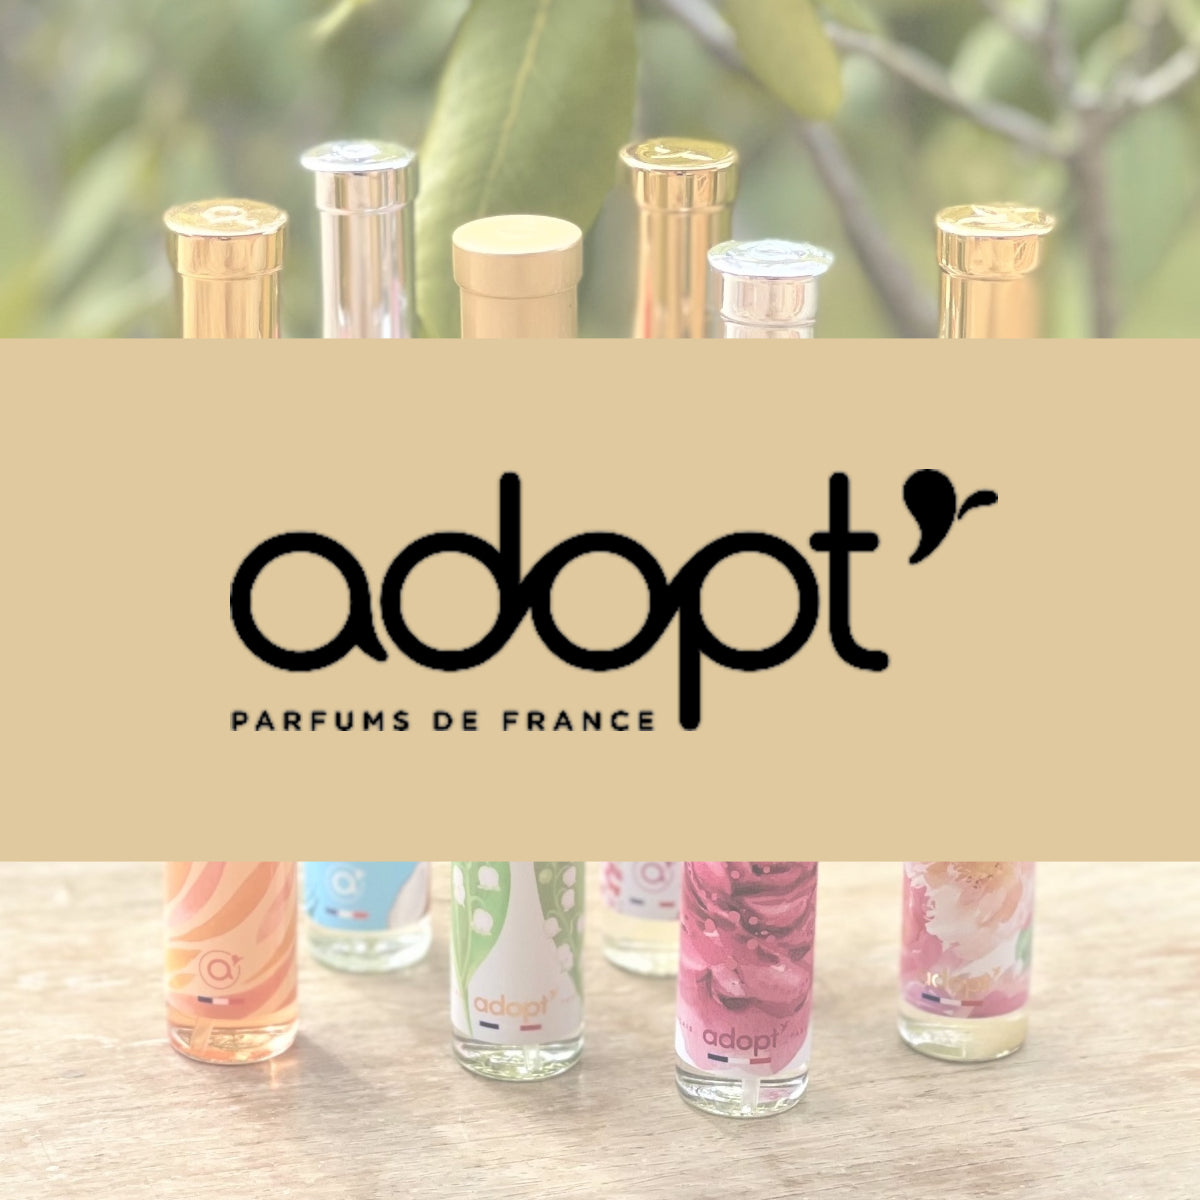 Adopt parfums